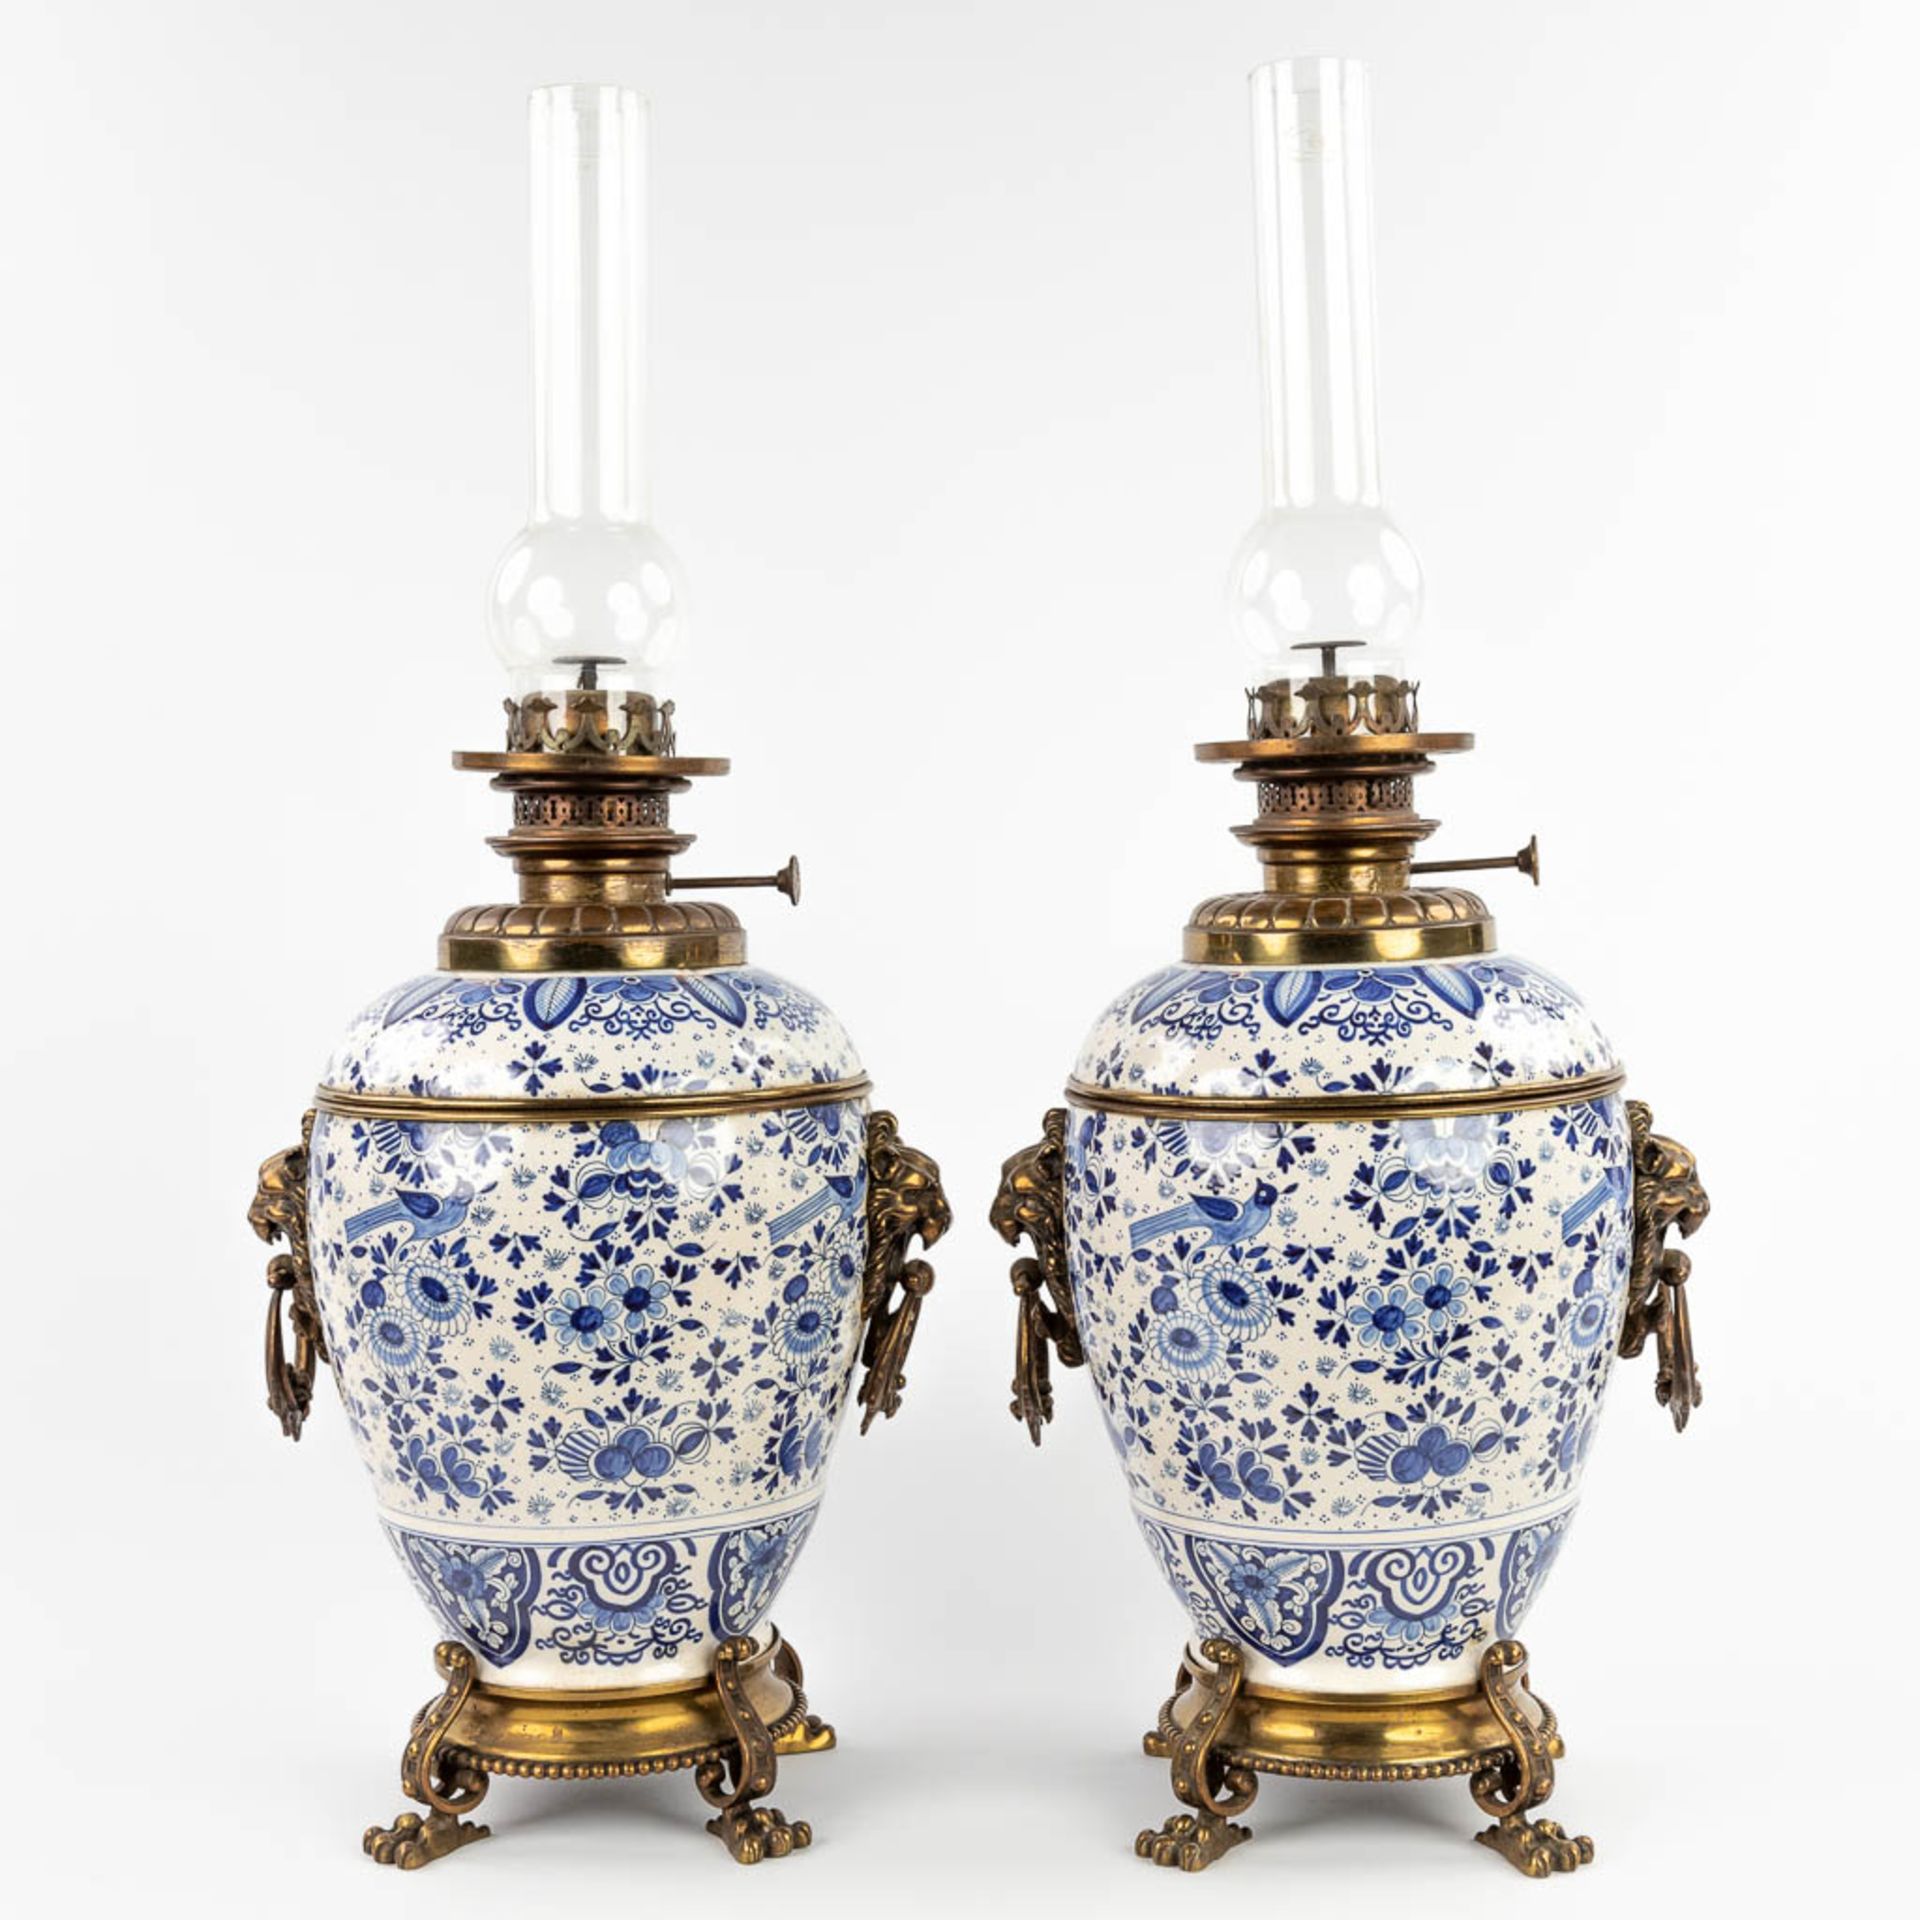 A pair of oil lamps, Delfts faience, 19th C. (D:23 x W:28 x H:68 cm) - Bild 8 aus 18